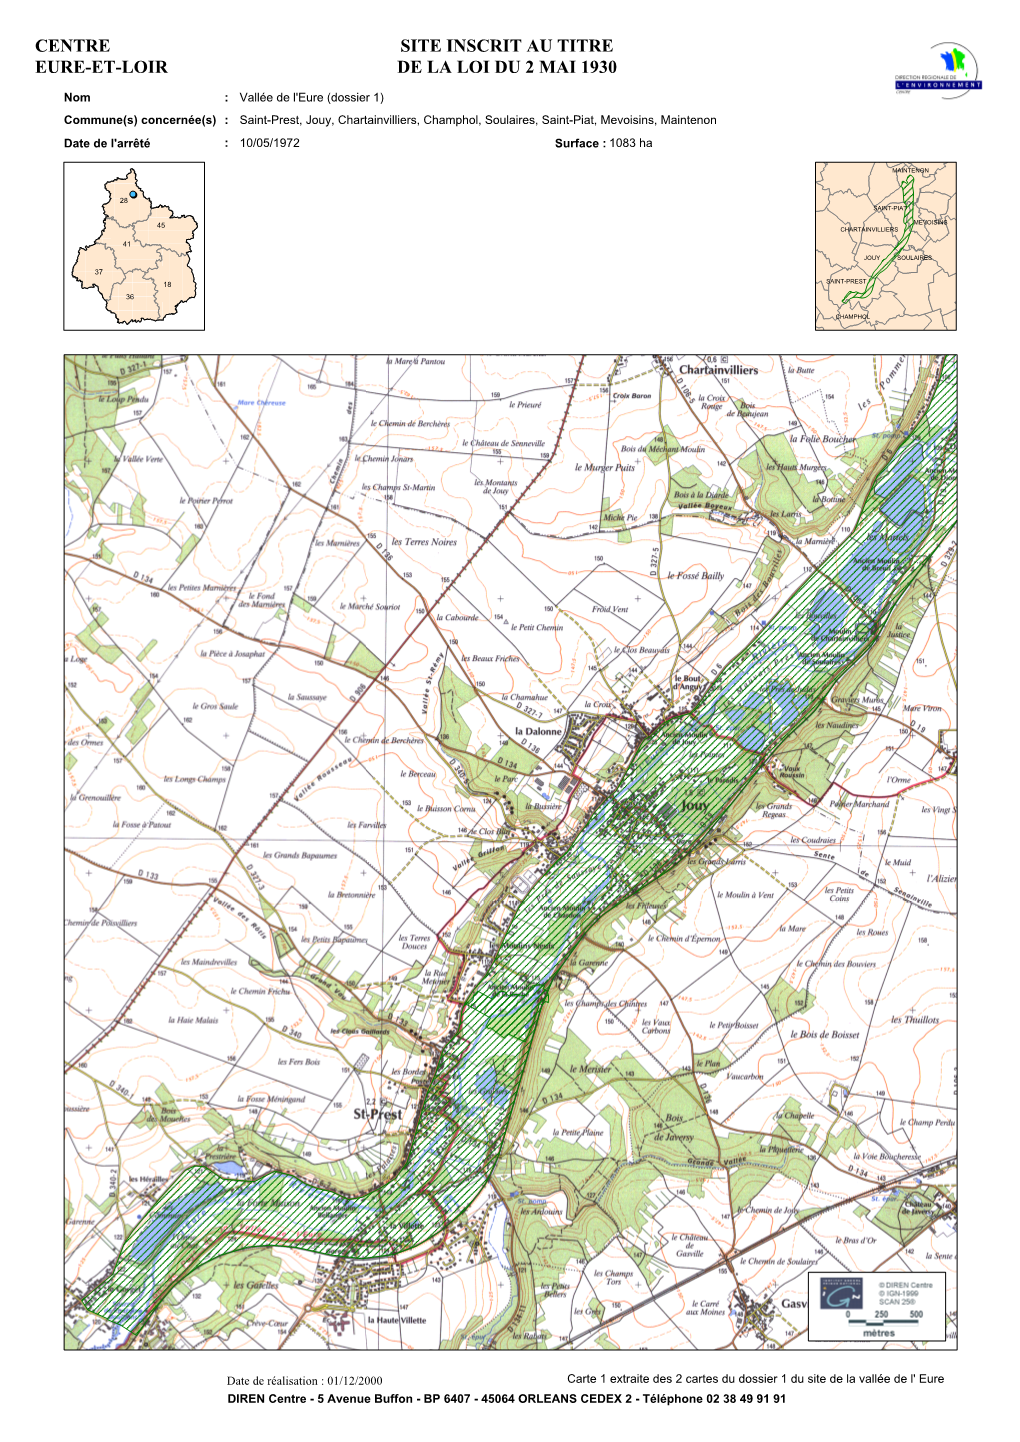 Site Inscrit Au Titre De La Loi Du 2 Mai 1930 Centre Eure-Et-Loir